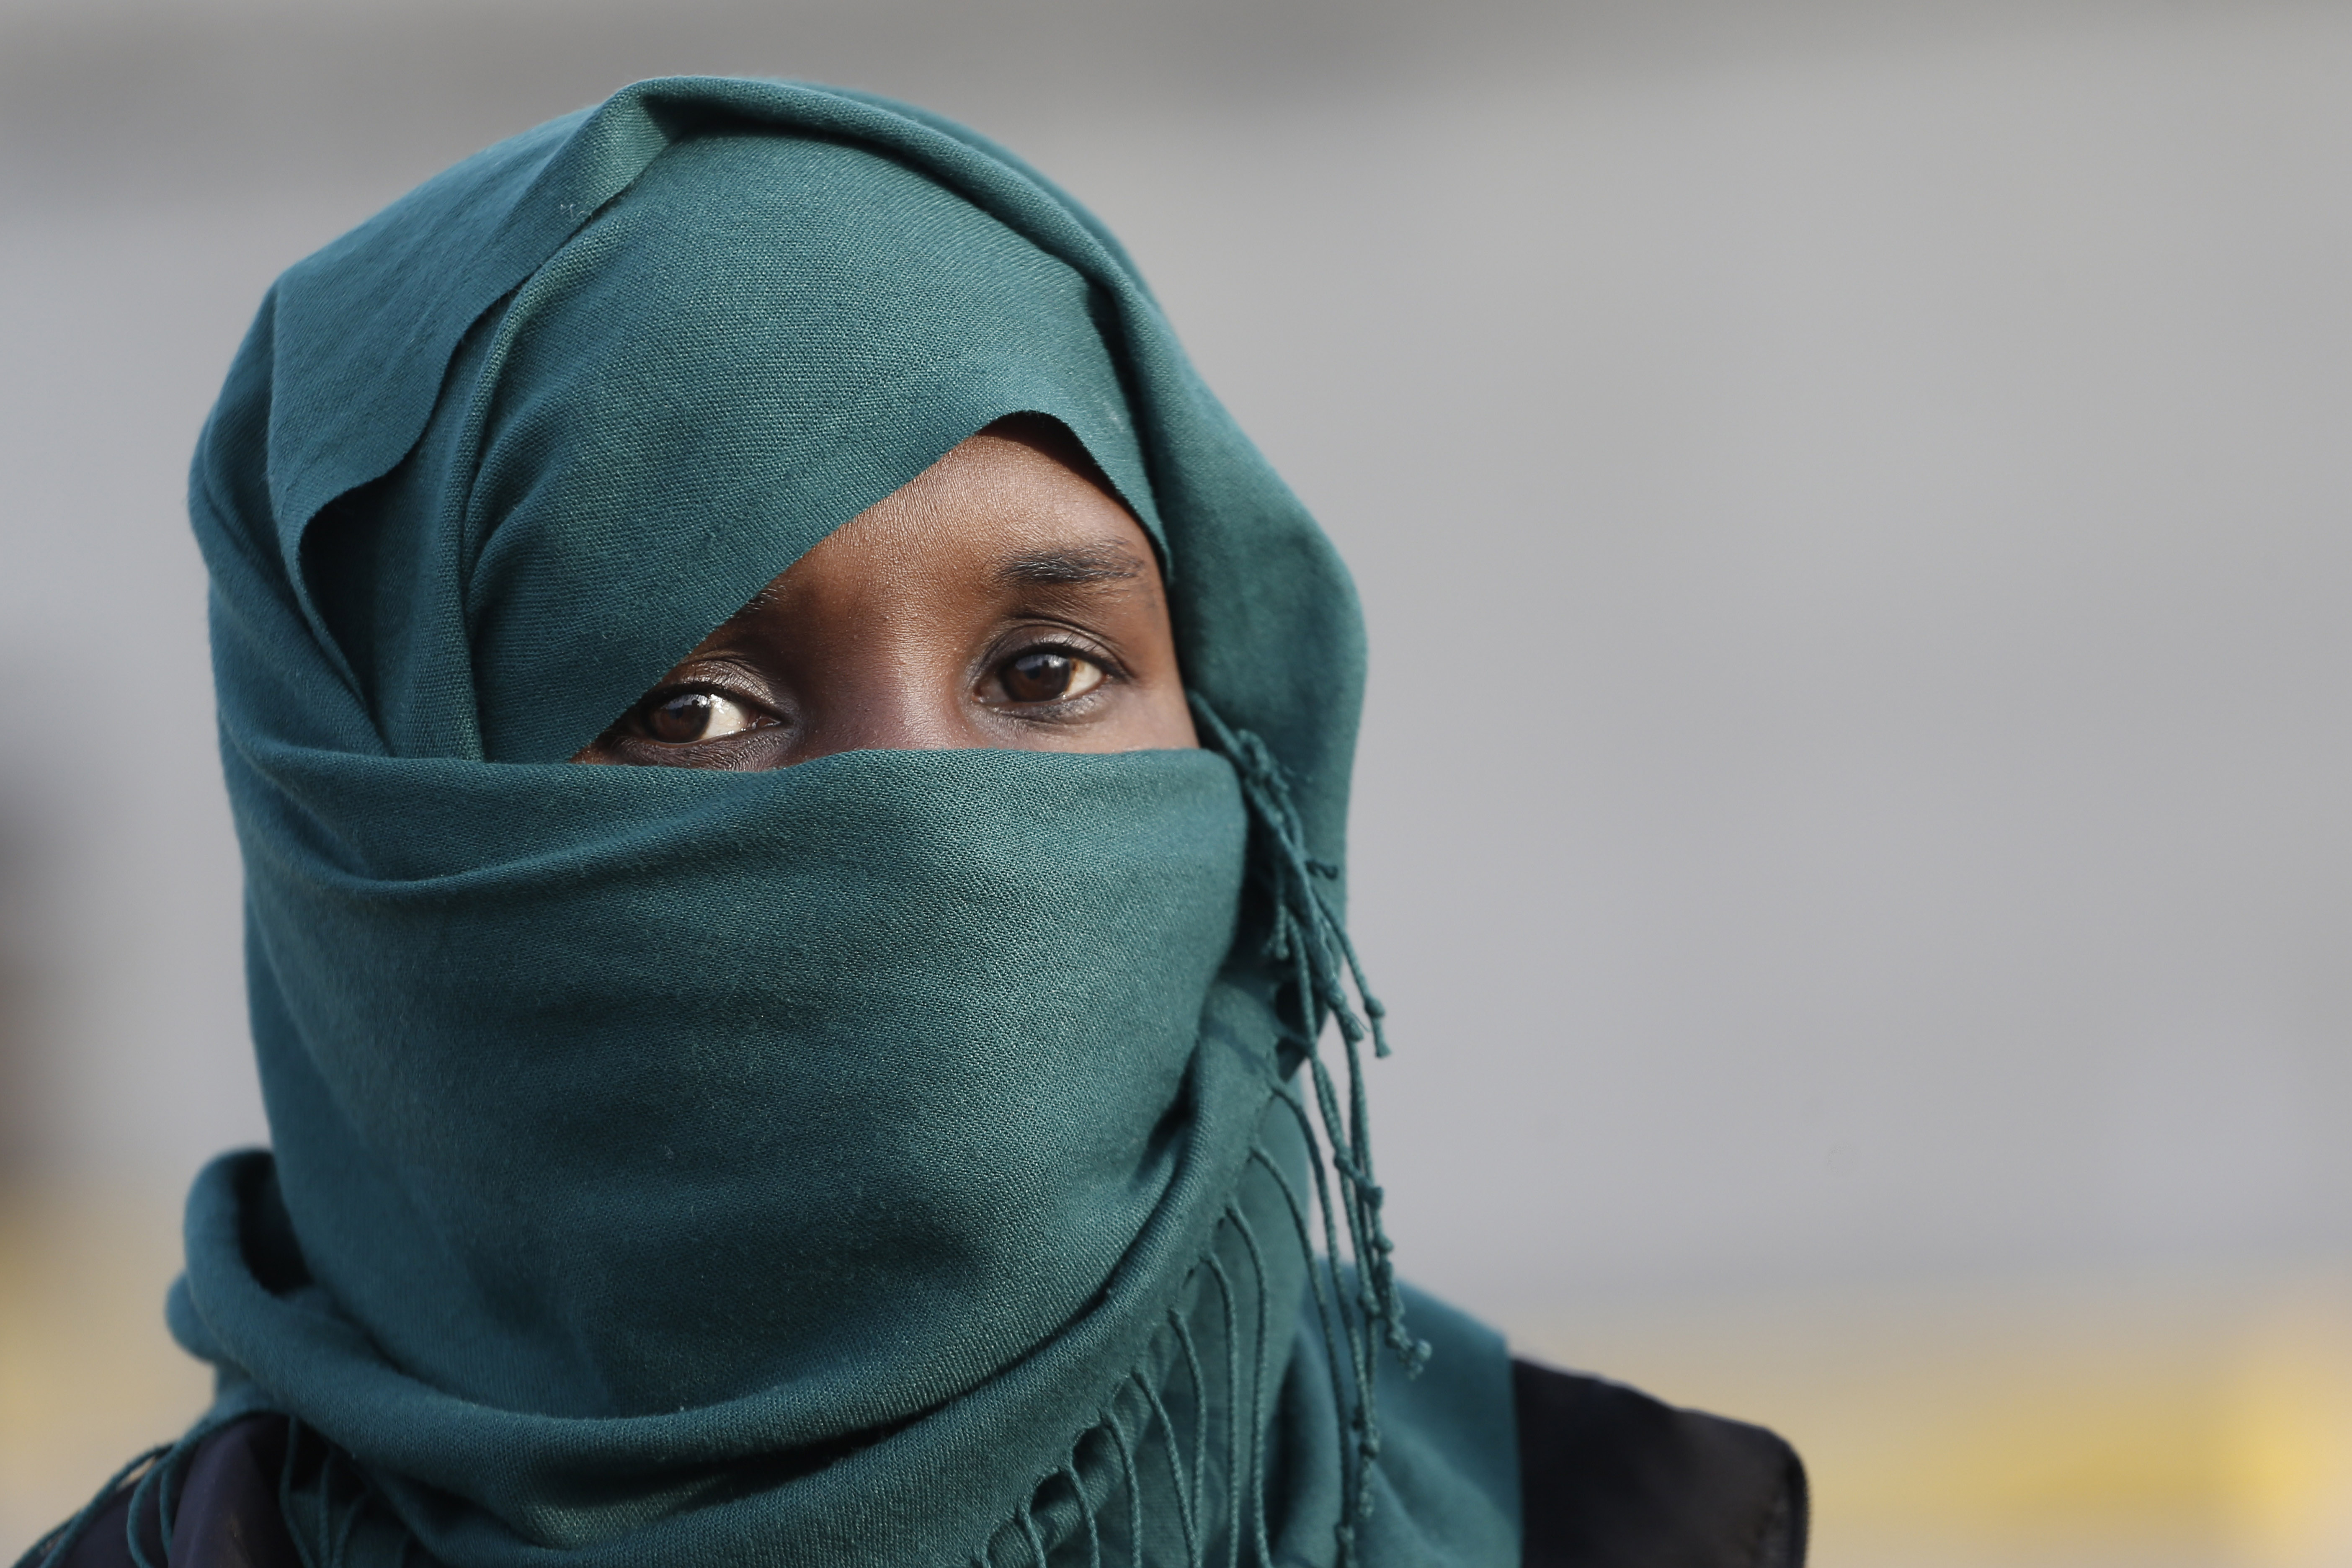 Σομαλία: Ισλαμιστές δολοφόνησαν γυναίκα επειδή δεν φορούσε μαντίλα